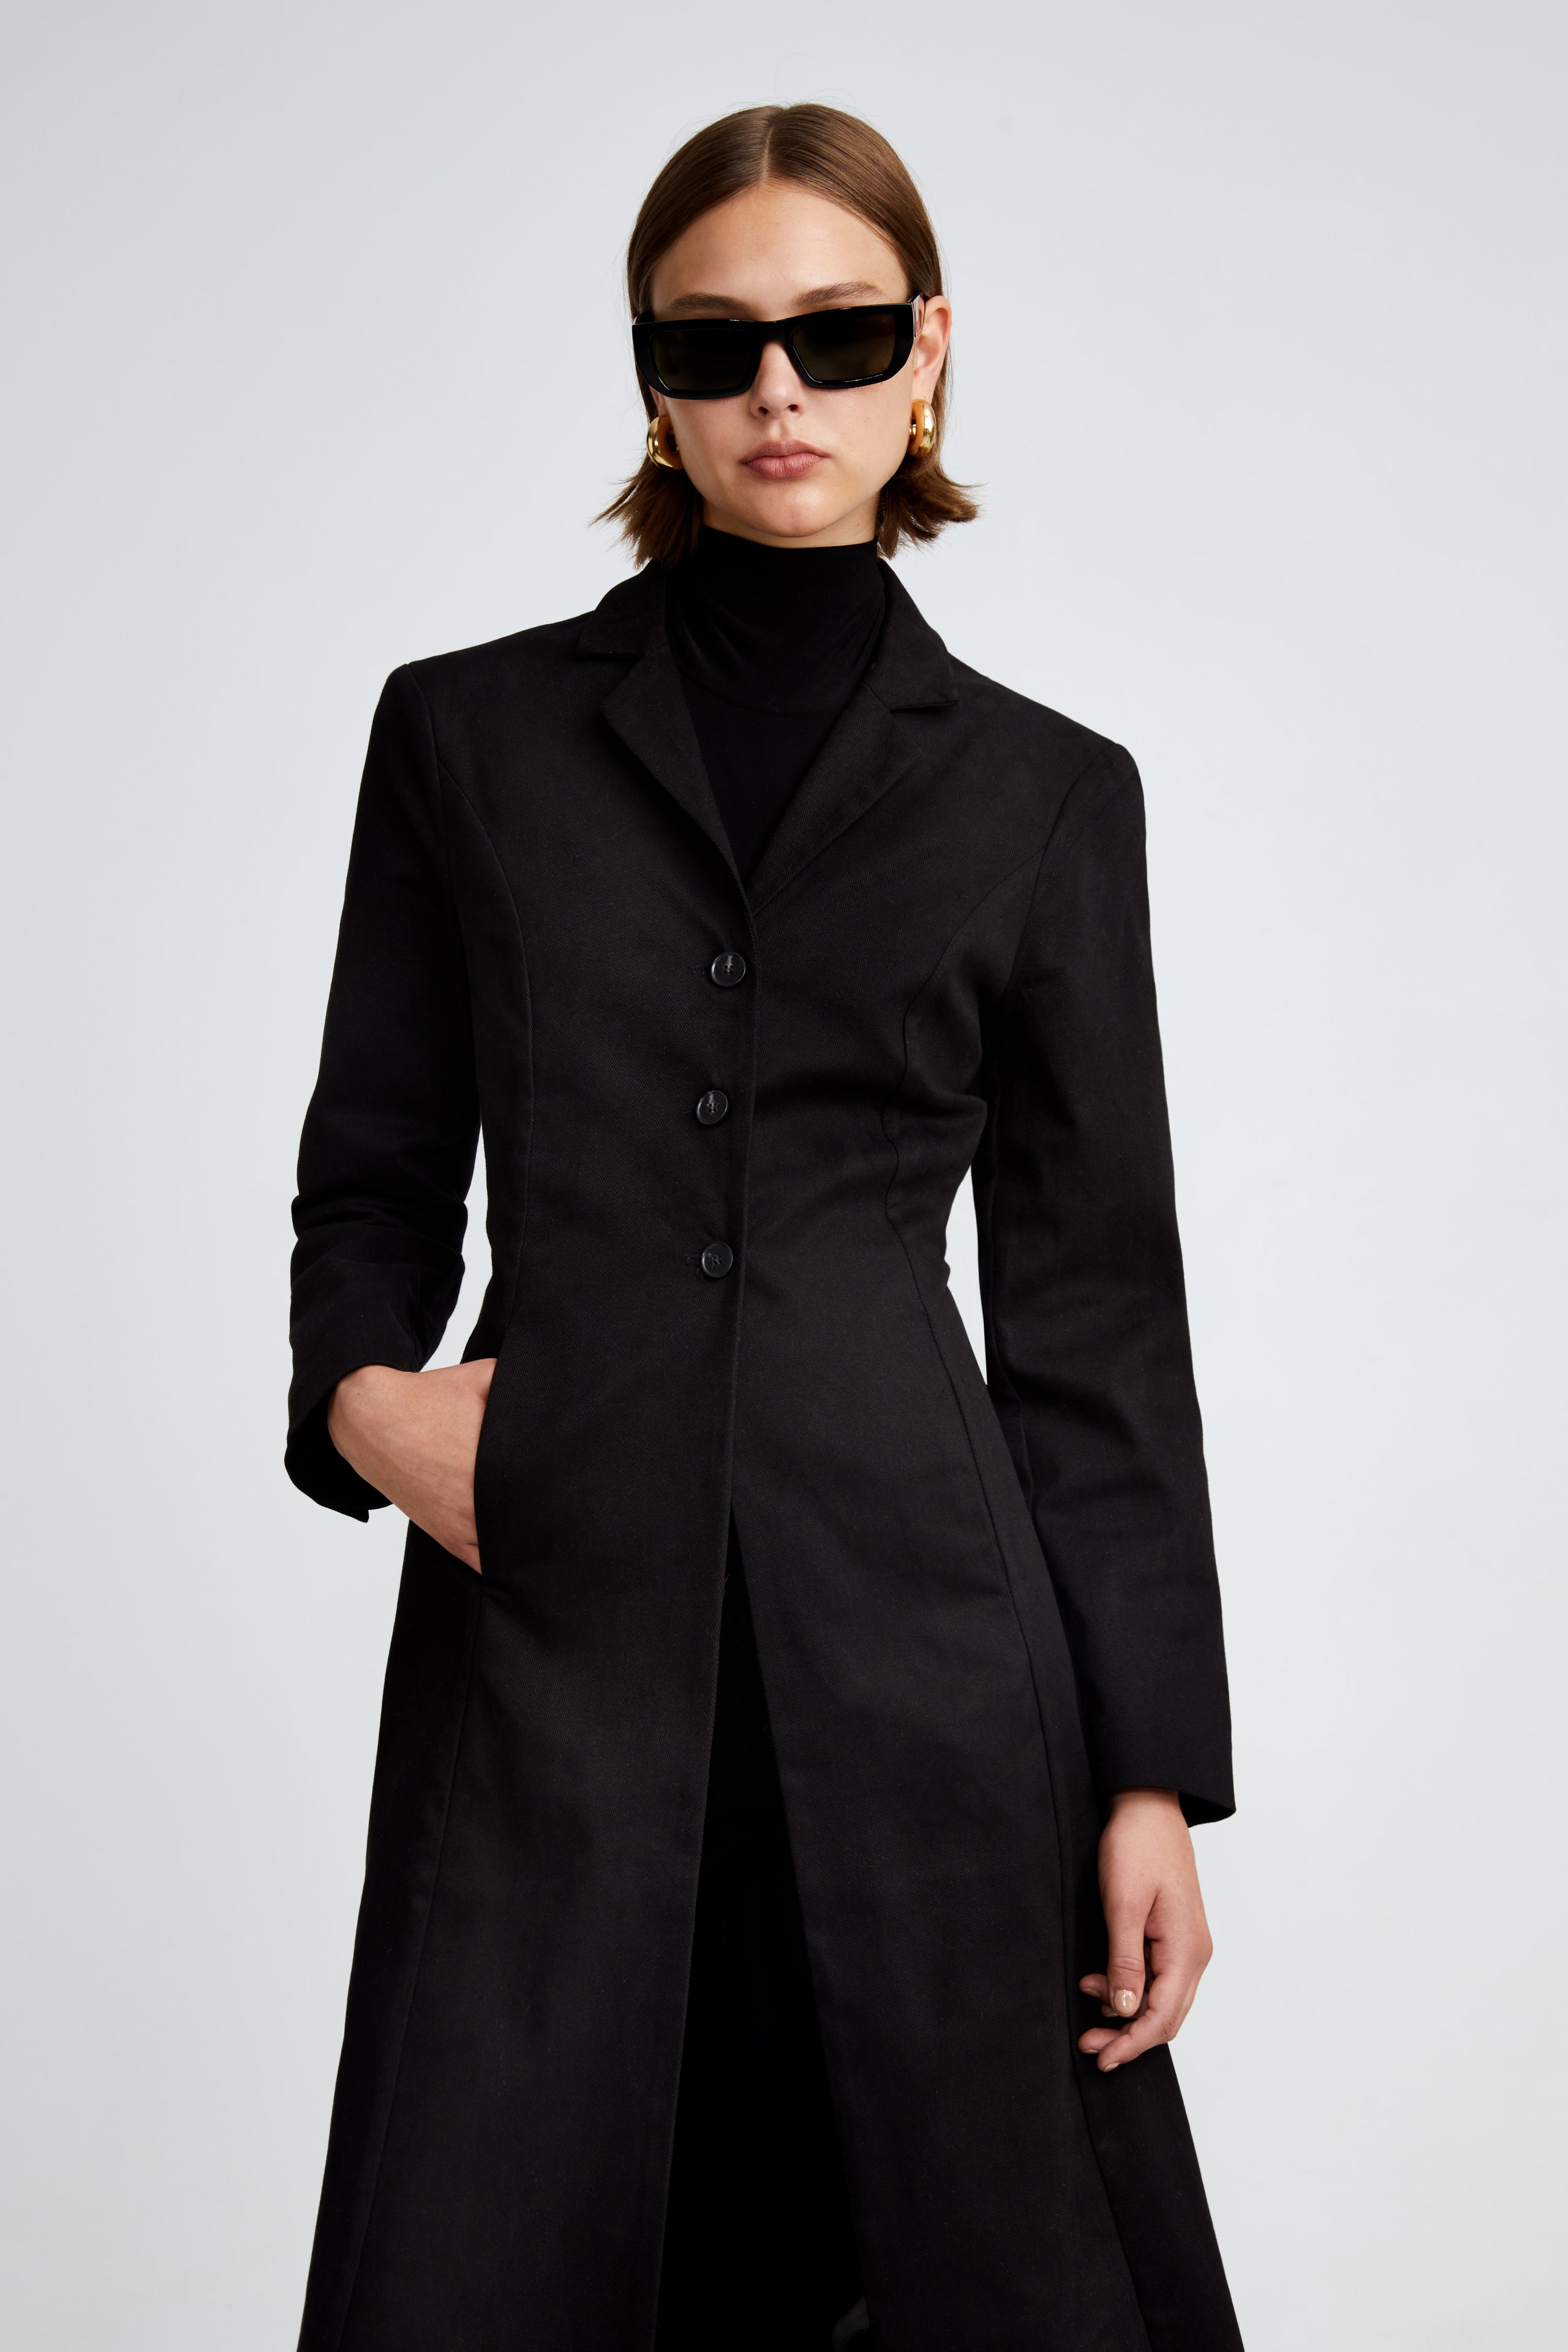 Model is wearing the Lydia Black Ladylike Denim Coat Close Up